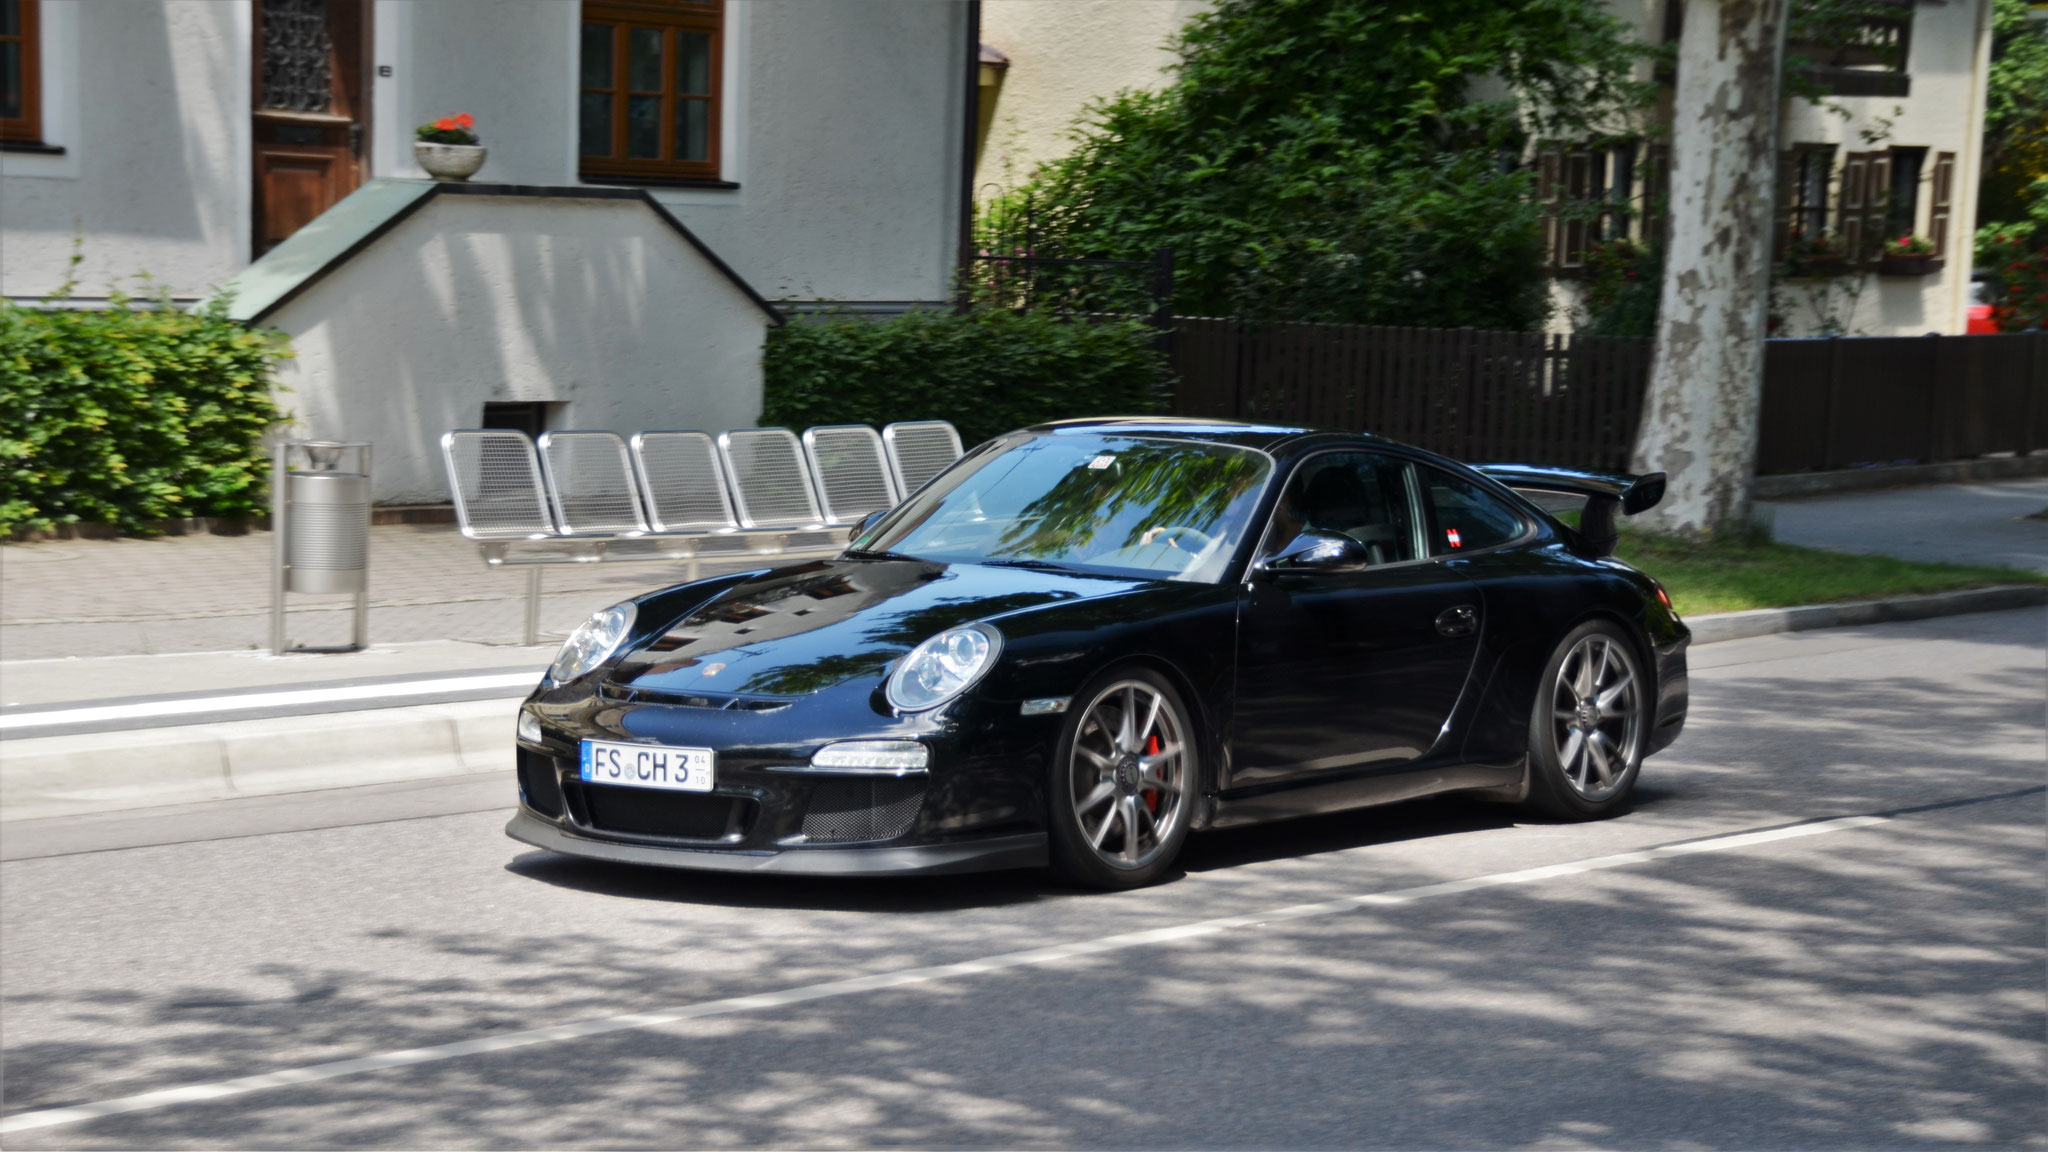 Porsche GT3 997 - FS-CH3